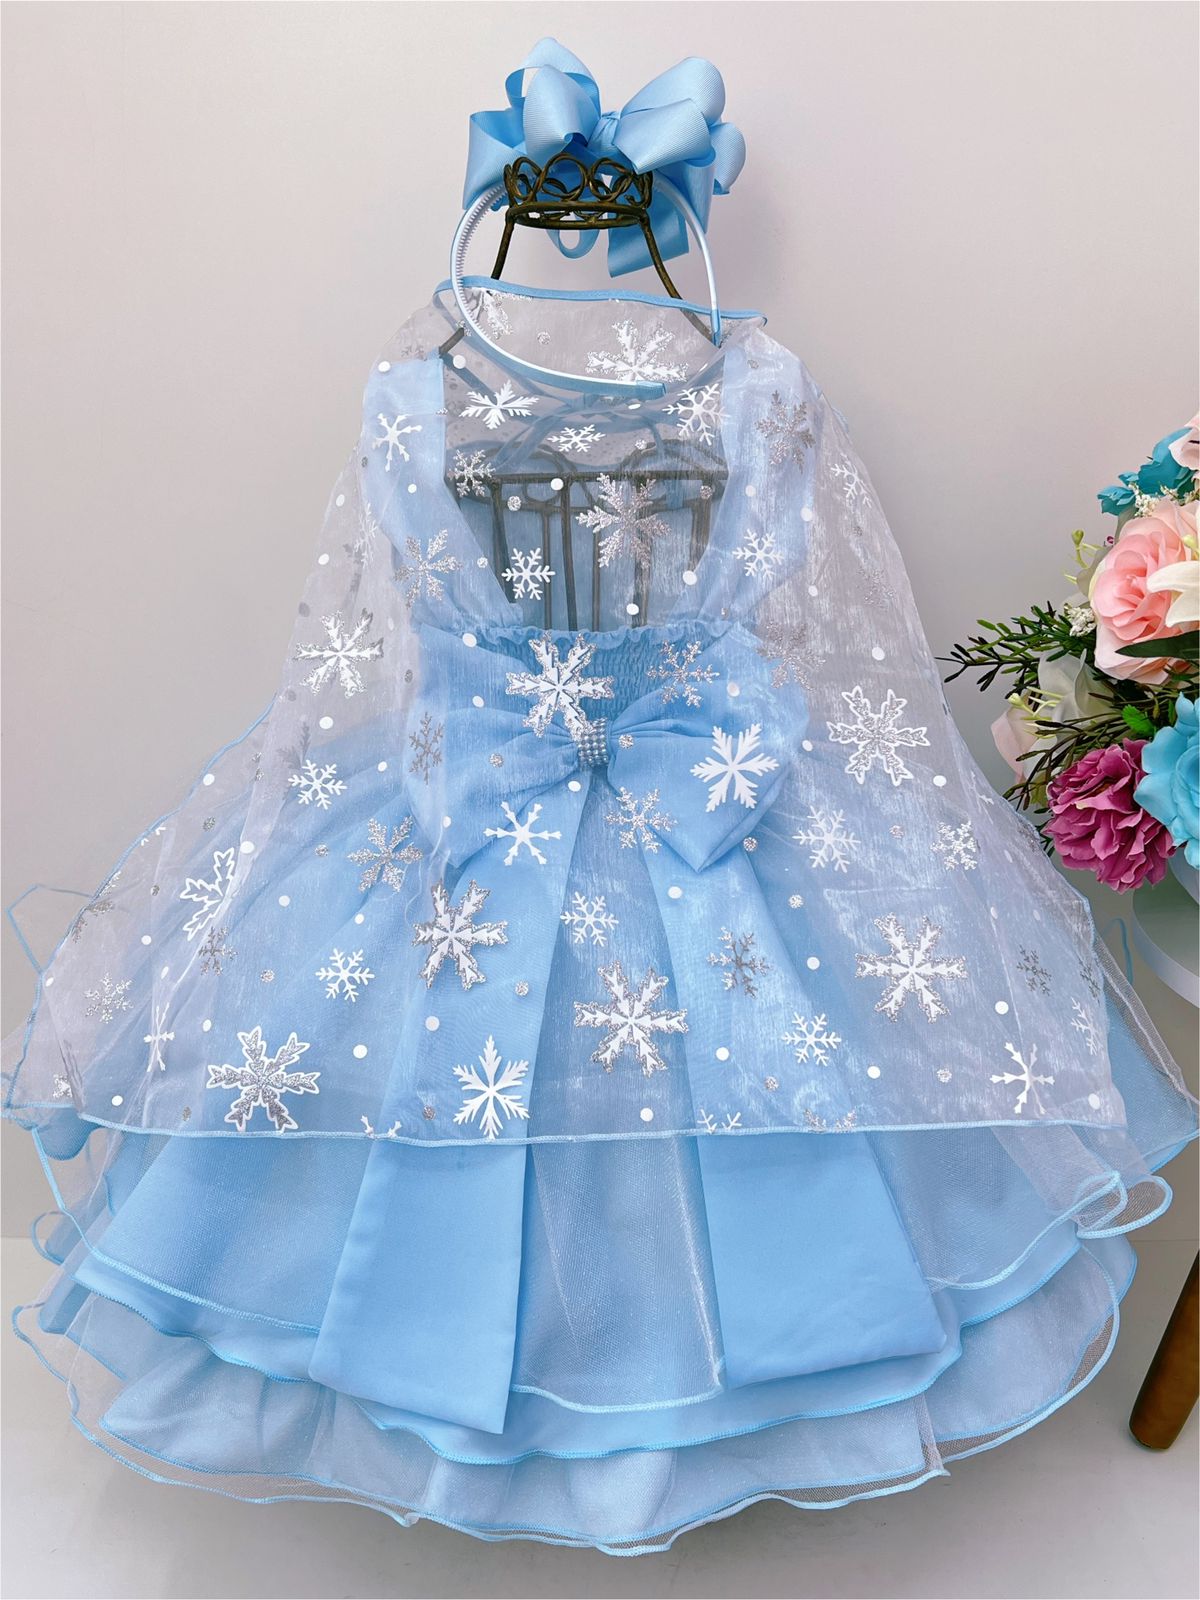 Vestido Elsa - frozen 1 - Super luxo serenity - Toda Encanto